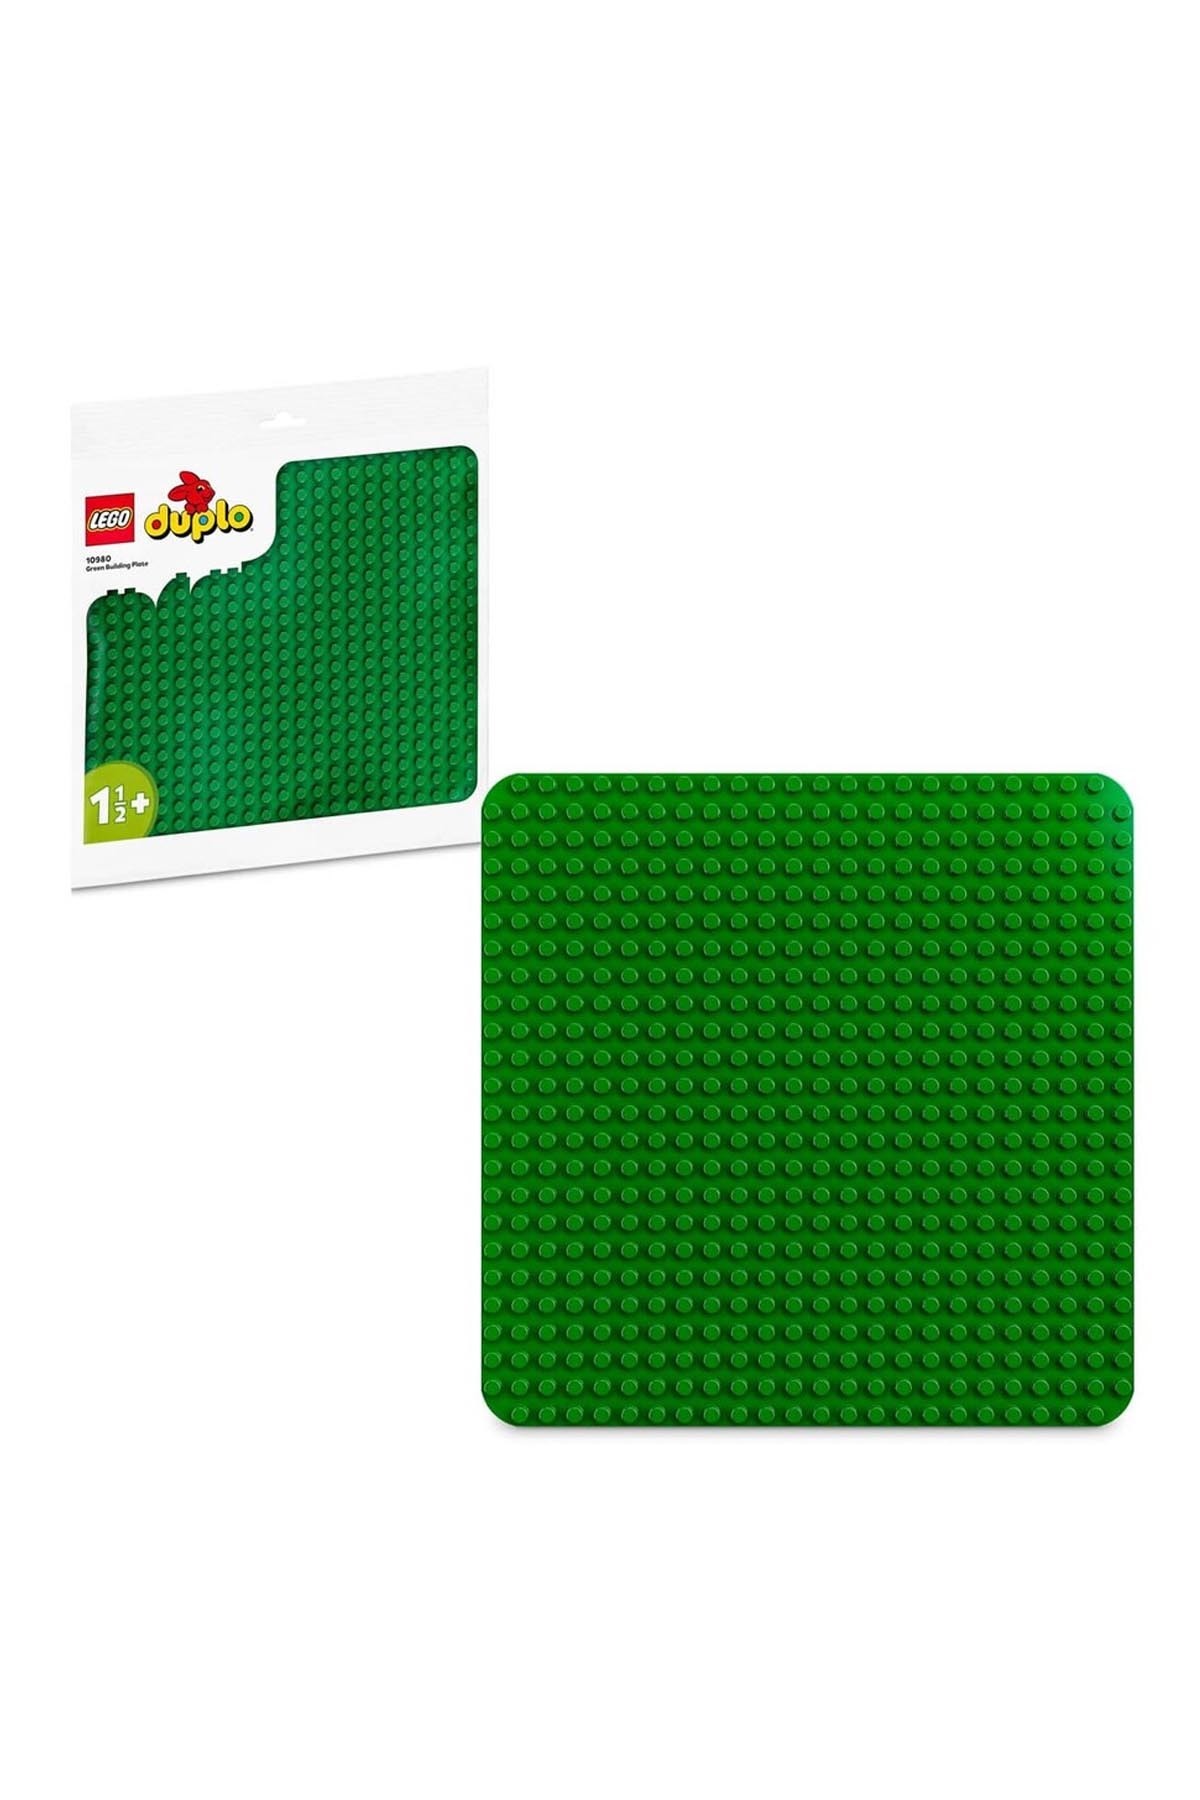 Lego Duplo Classic Yeşil Yapım Plakası 10980